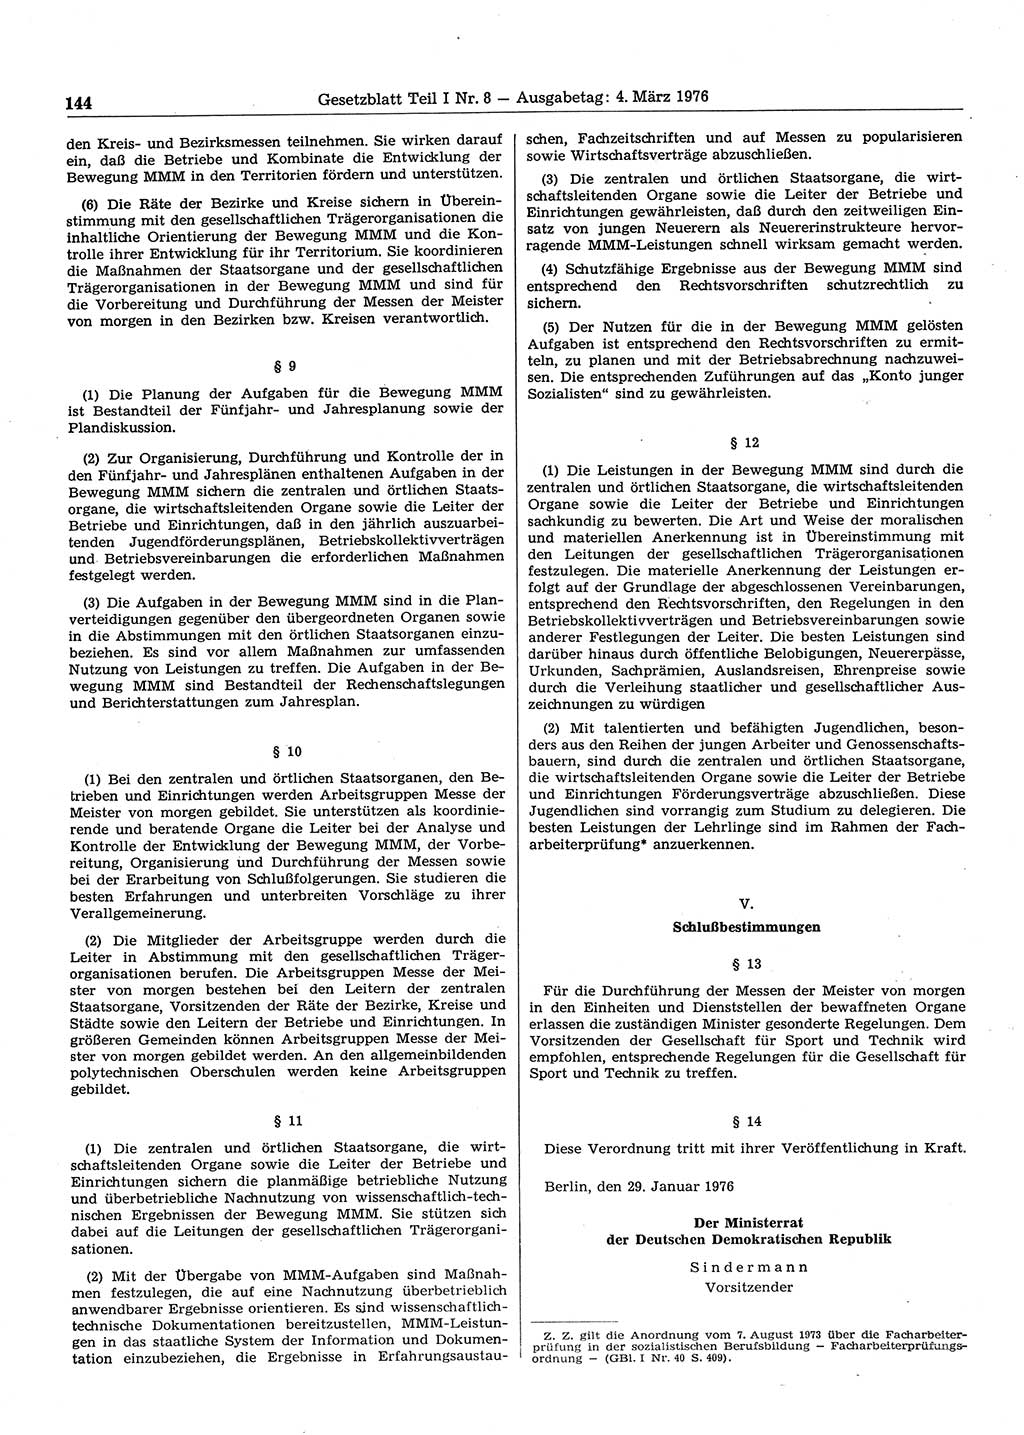 Gesetzblatt (GBl.) der Deutschen Demokratischen Republik (DDR) Teil Ⅰ 1976, Seite 144 (GBl. DDR Ⅰ 1976, S. 144)